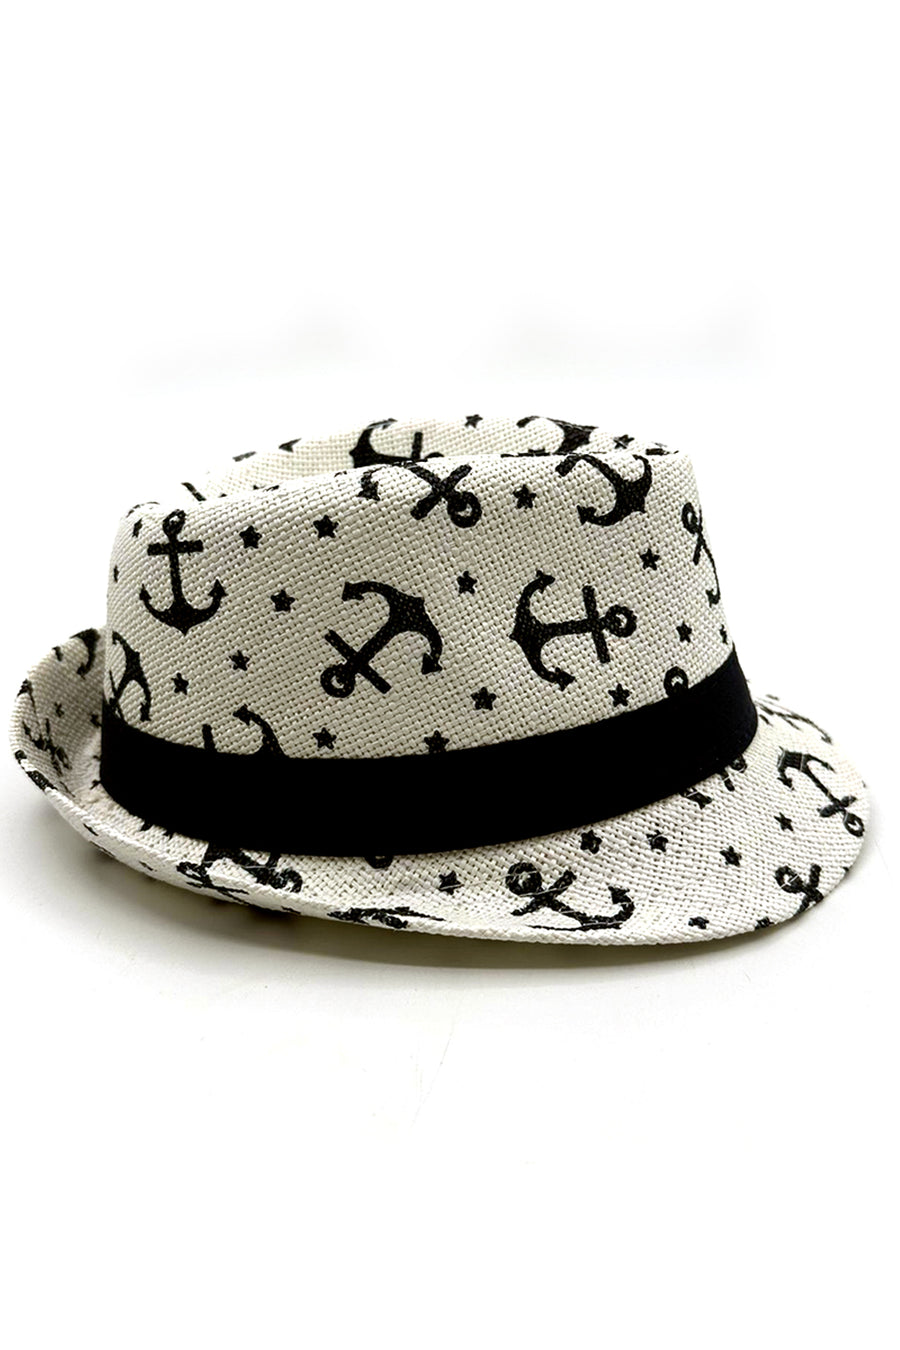 Kids White Summer Straw Anchor Hat Fedora Beach Sun Hat